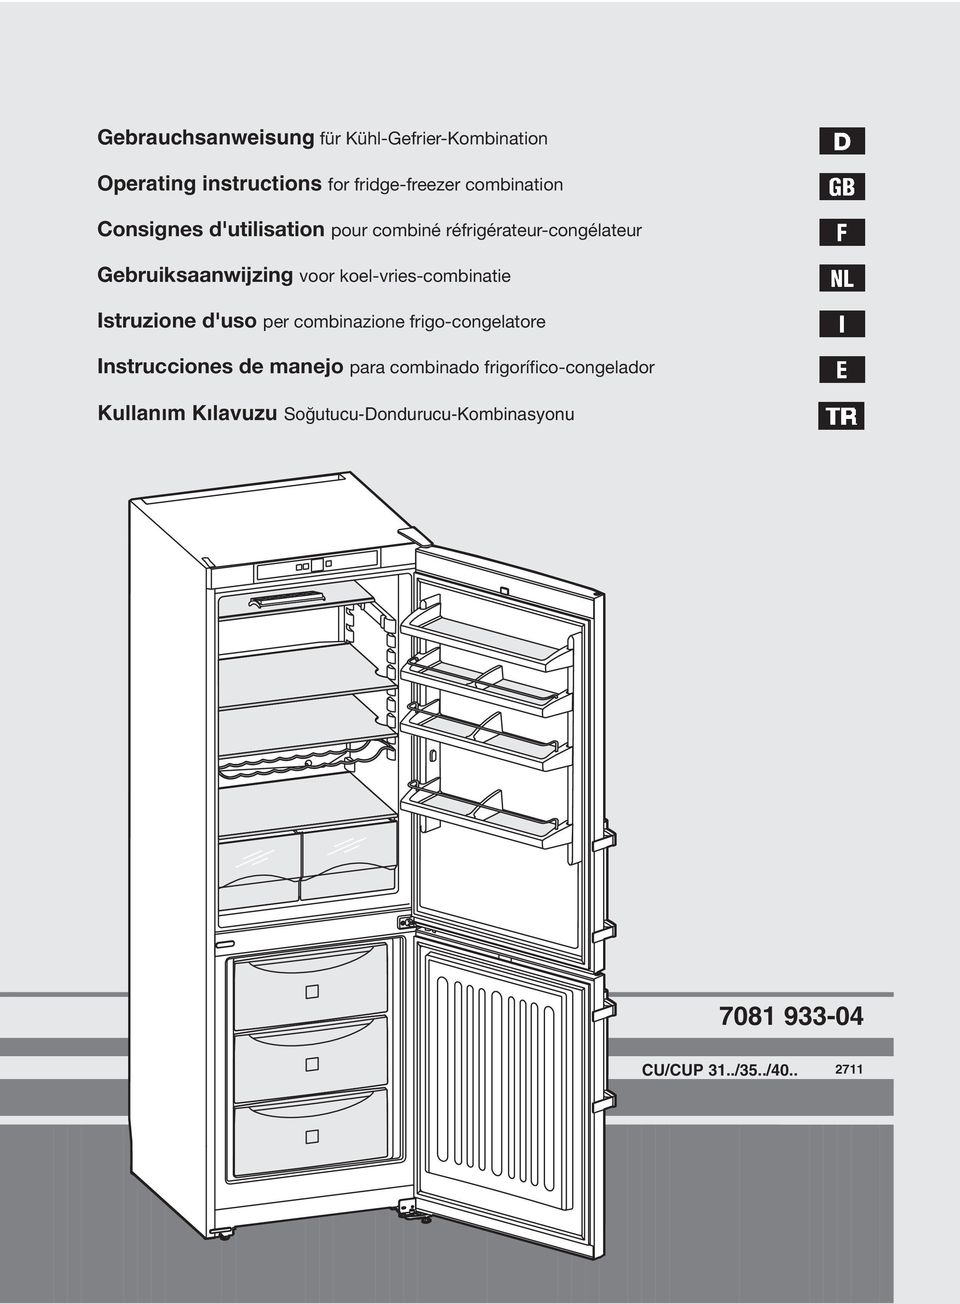 koel-vries-combinatie Istruzione d'uso per combinazione frigo-congelatore Instrucciones de manejo para